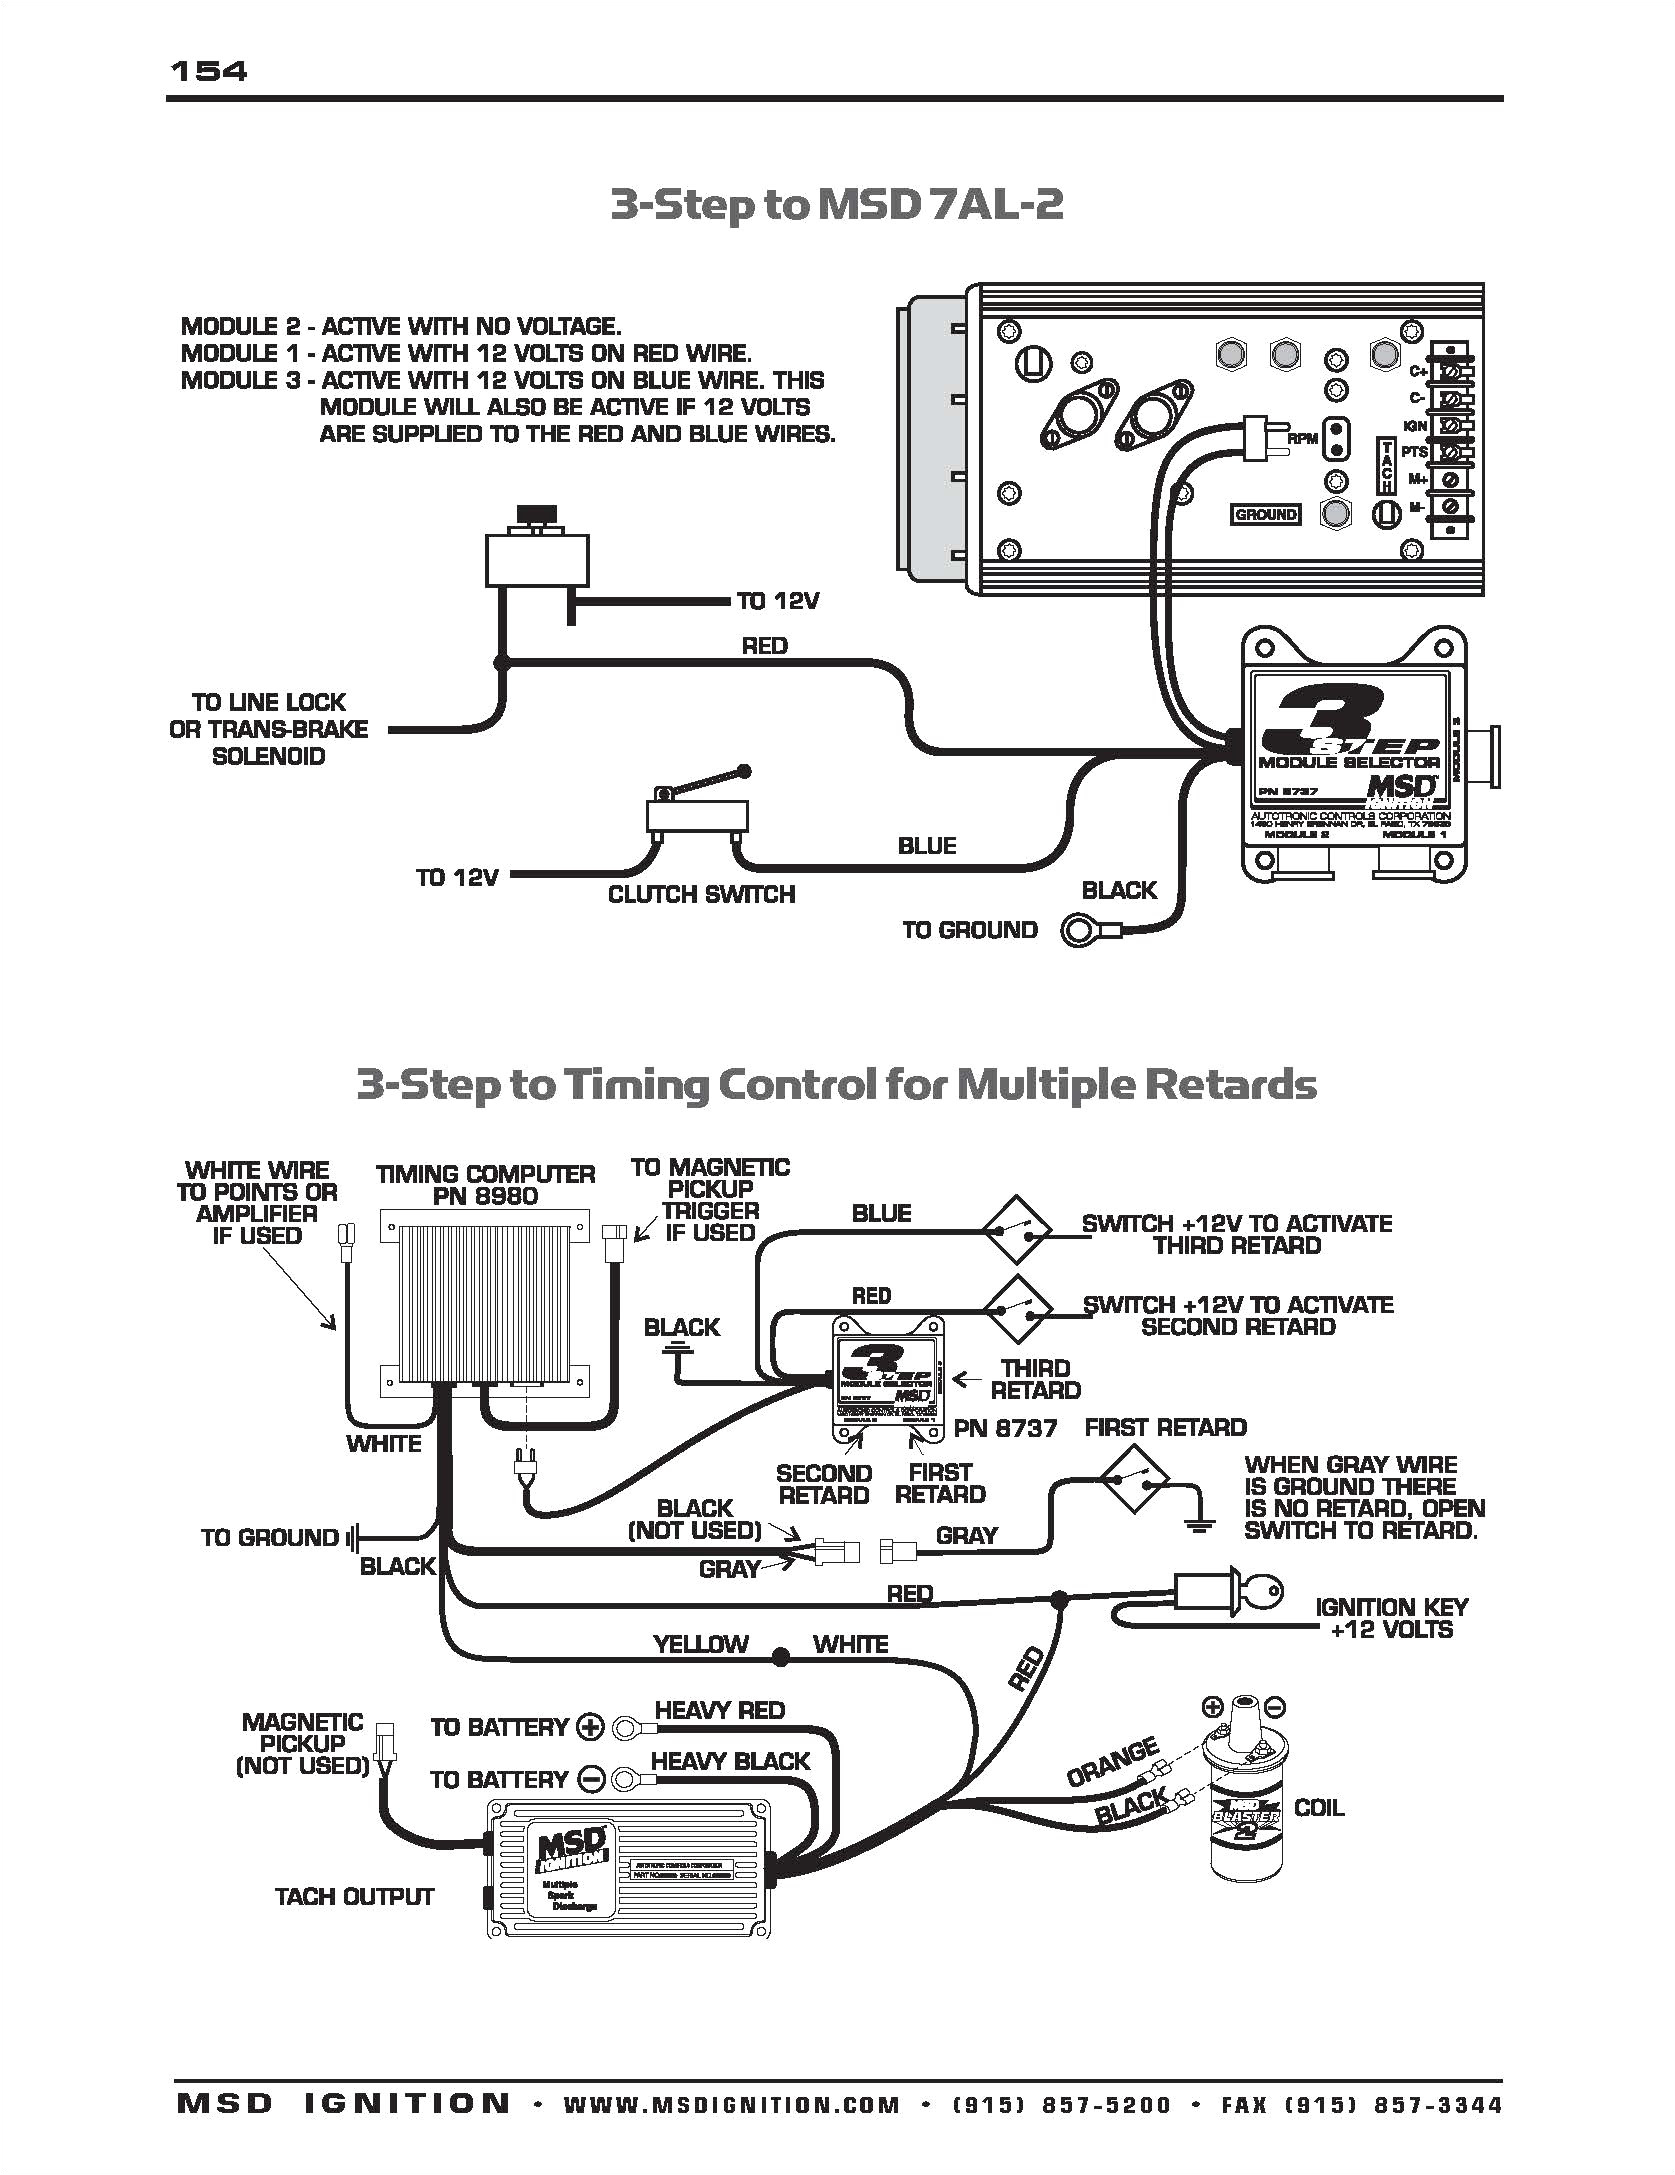 john deere 310 sg wiring diagram best of turn signal wiring diagram john deere 310 backhoe